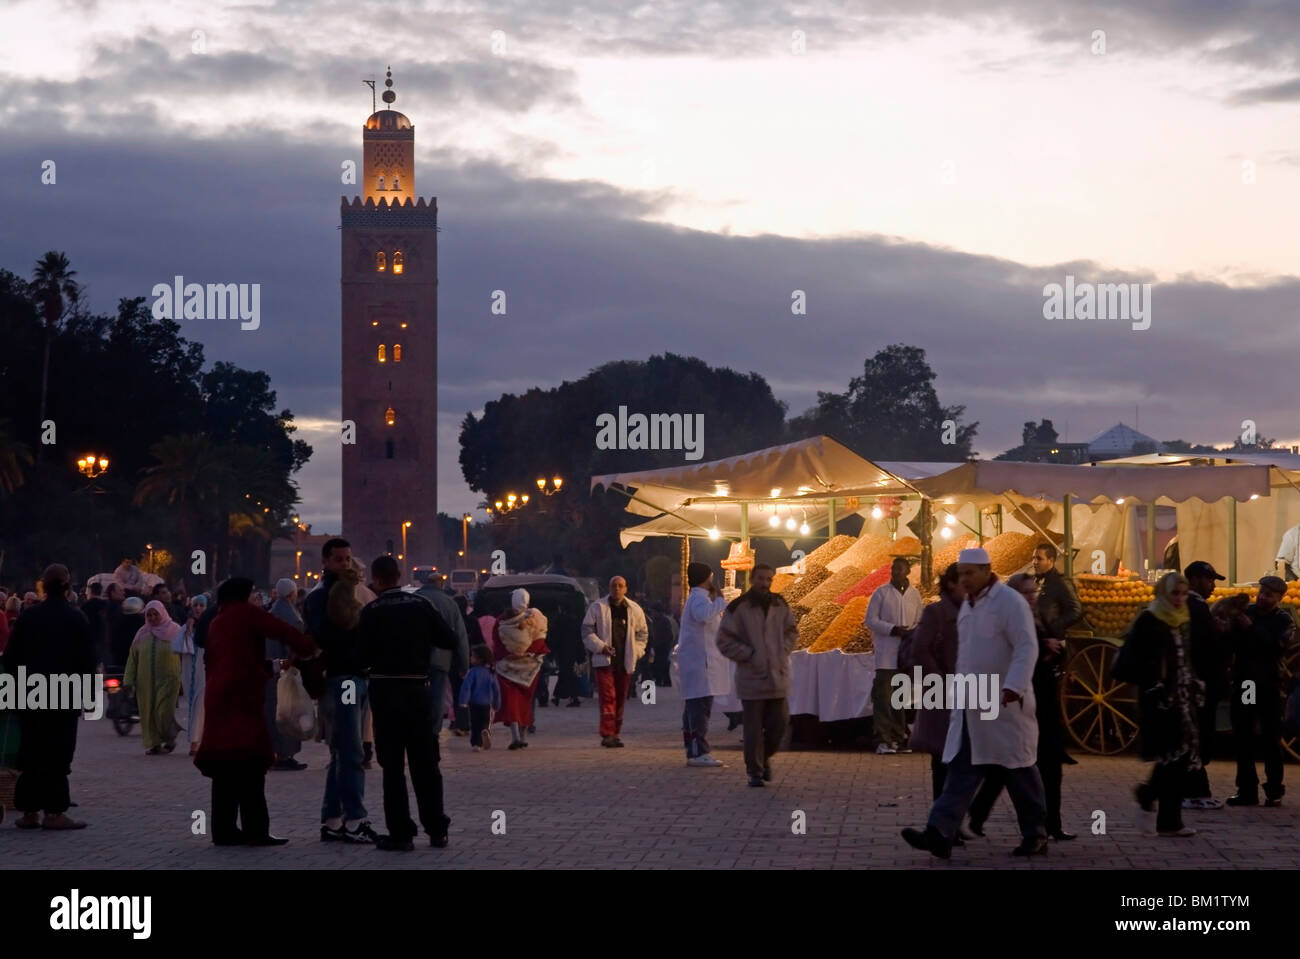 Vendeur de fruits, la Place Jemaa El Fna (Place Djemaa El Fna), UNESCO World Heritage Site, Marrakech (Marrakech), le Maroc, l'Afrique Banque D'Images